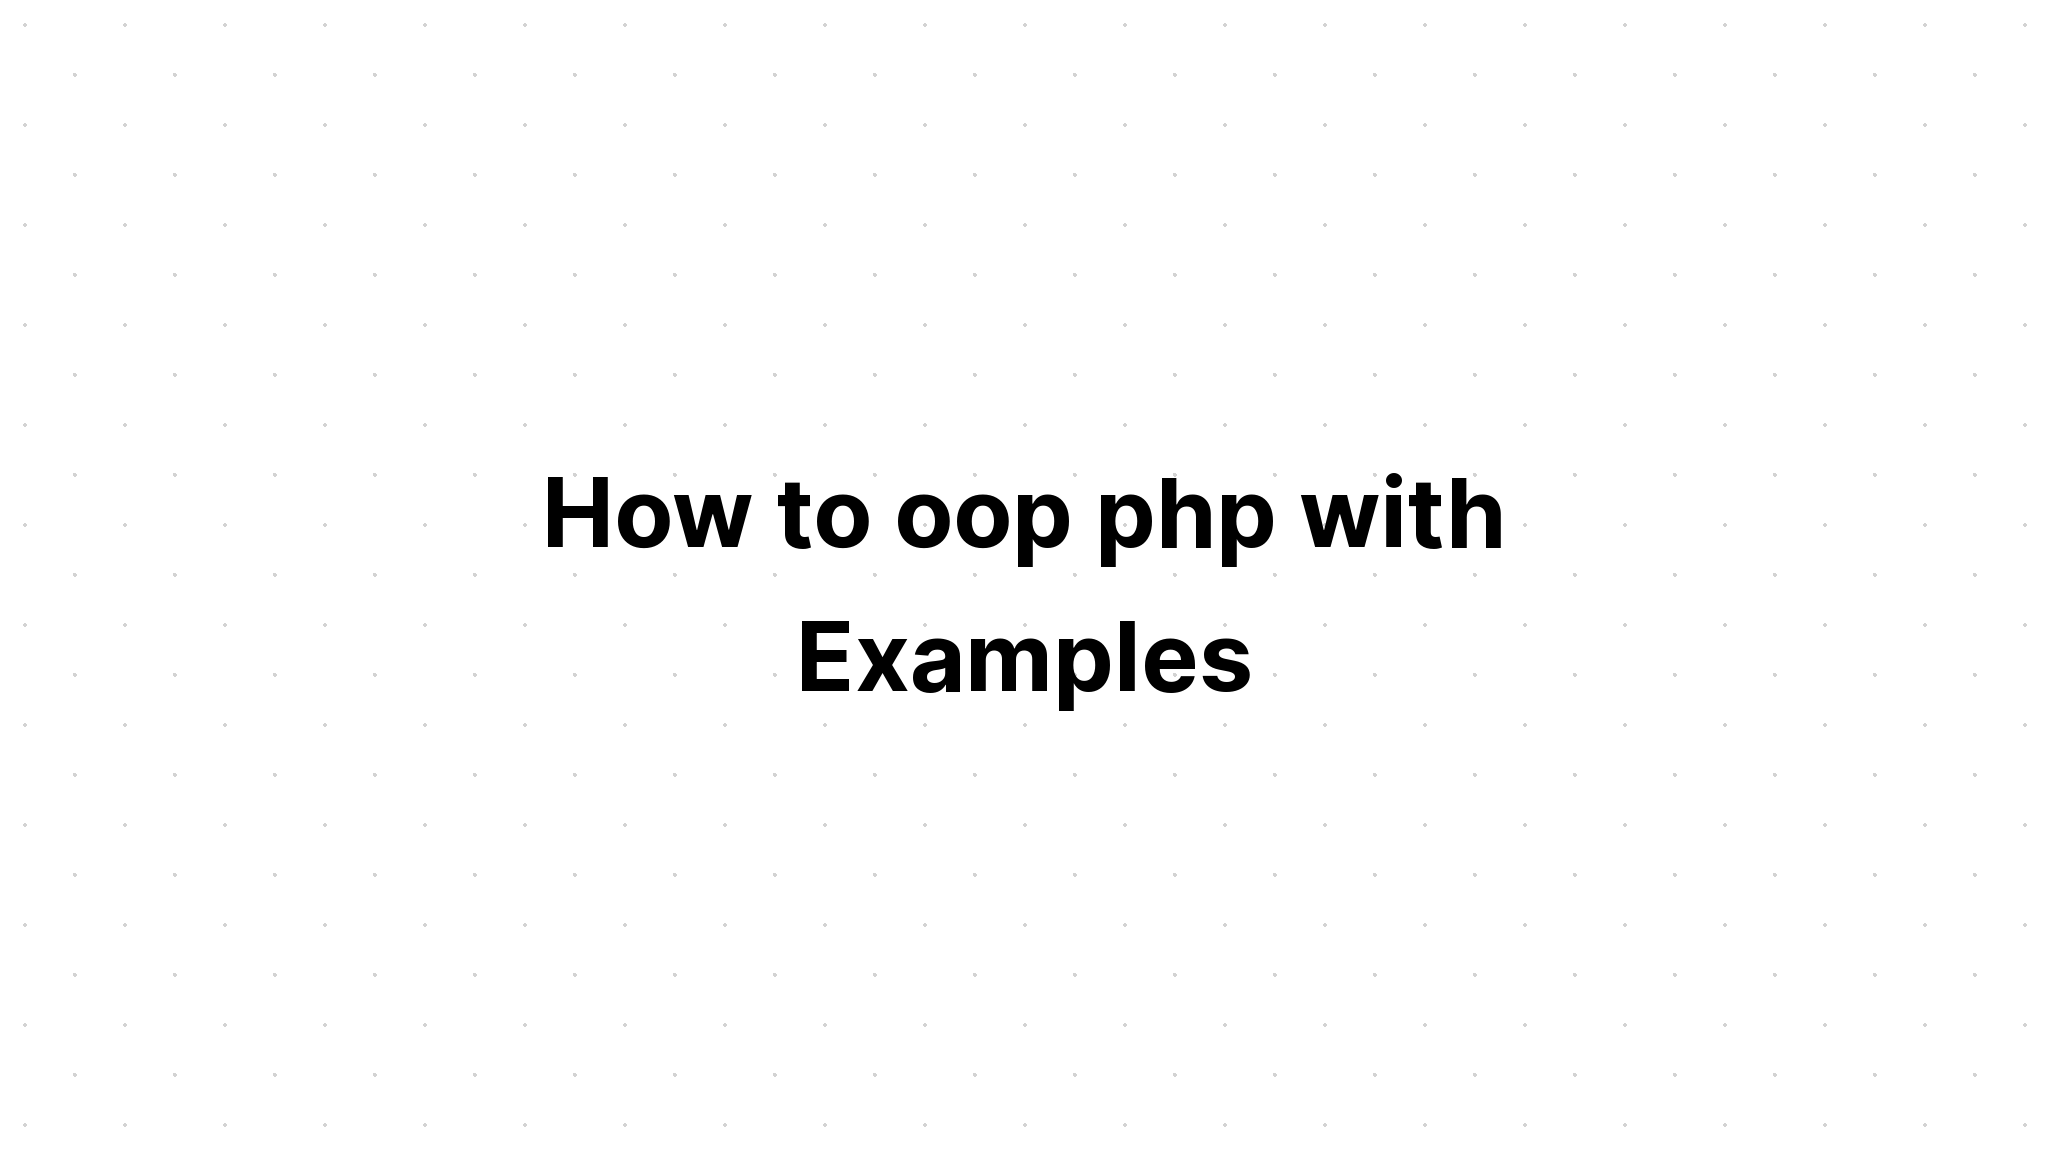 Cách oop php với các ví dụ